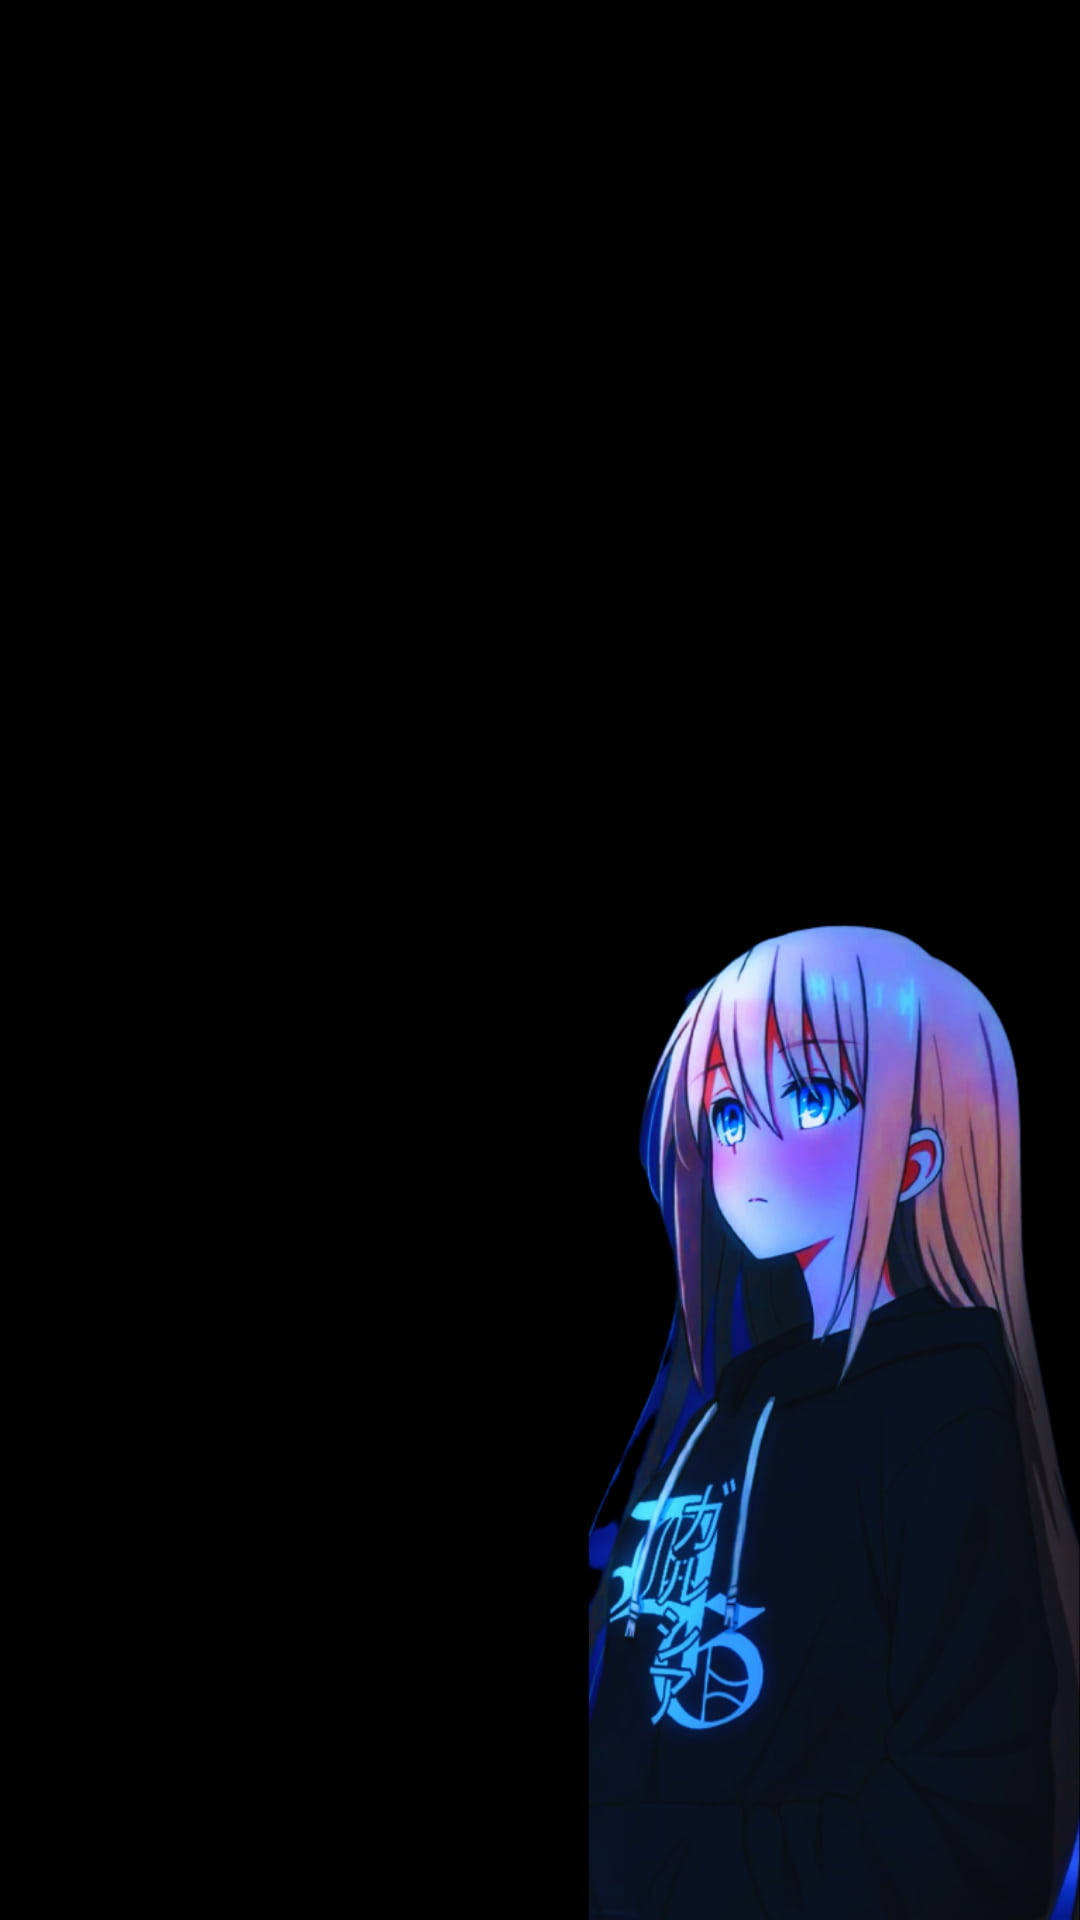 Dark Aesthetic Sad Anime Girl